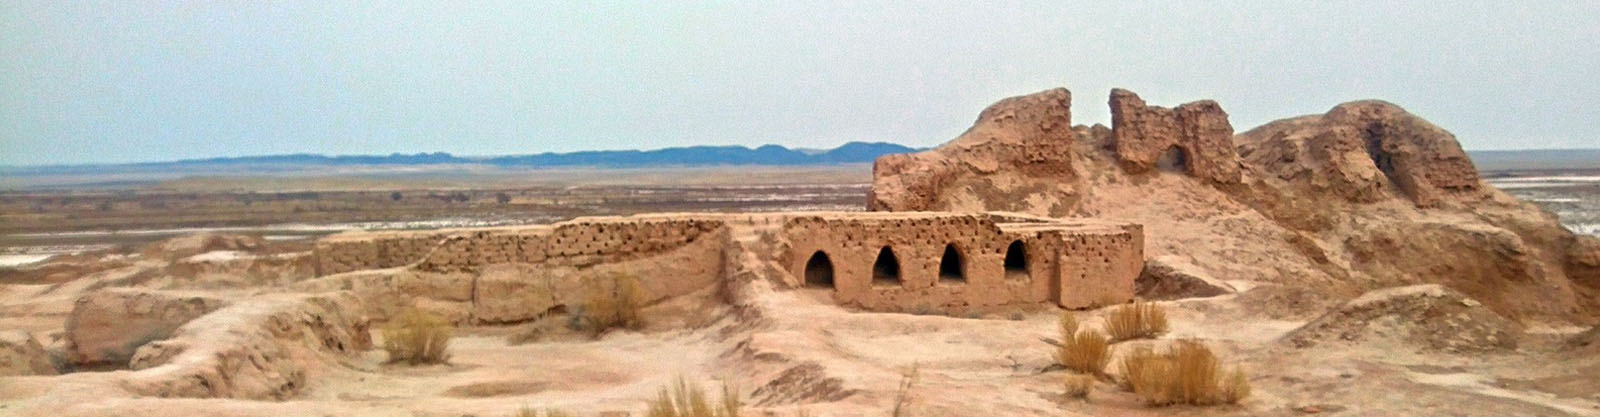 ancient-khorezm-tour-banner-dest